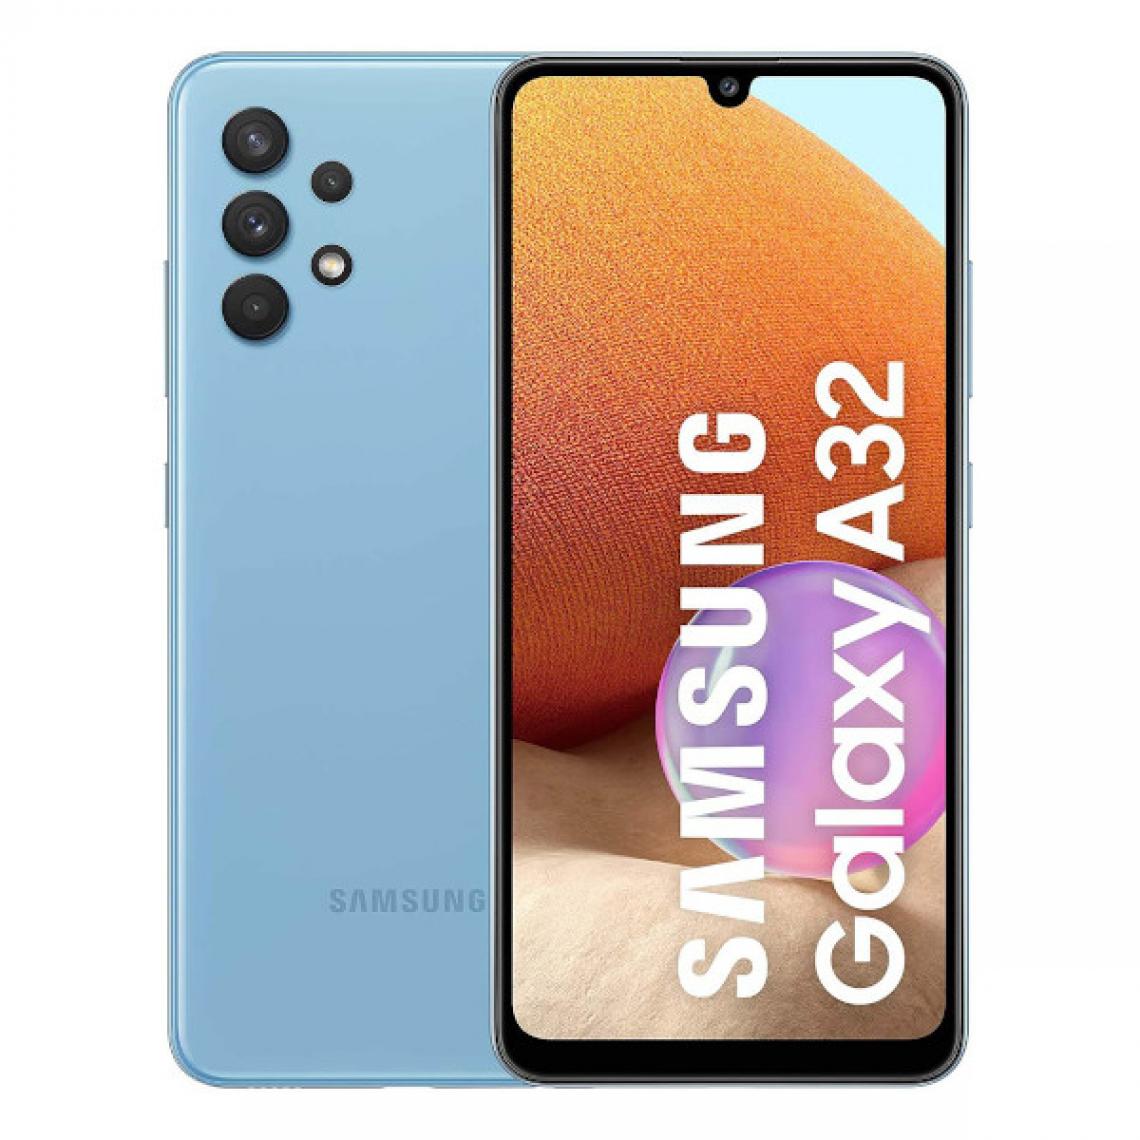 Samsung - Samsung Galaxy A32 4Go/128Go Bleu (Awesome Blue) Dual SIM SM-A325F - Smartphone Android